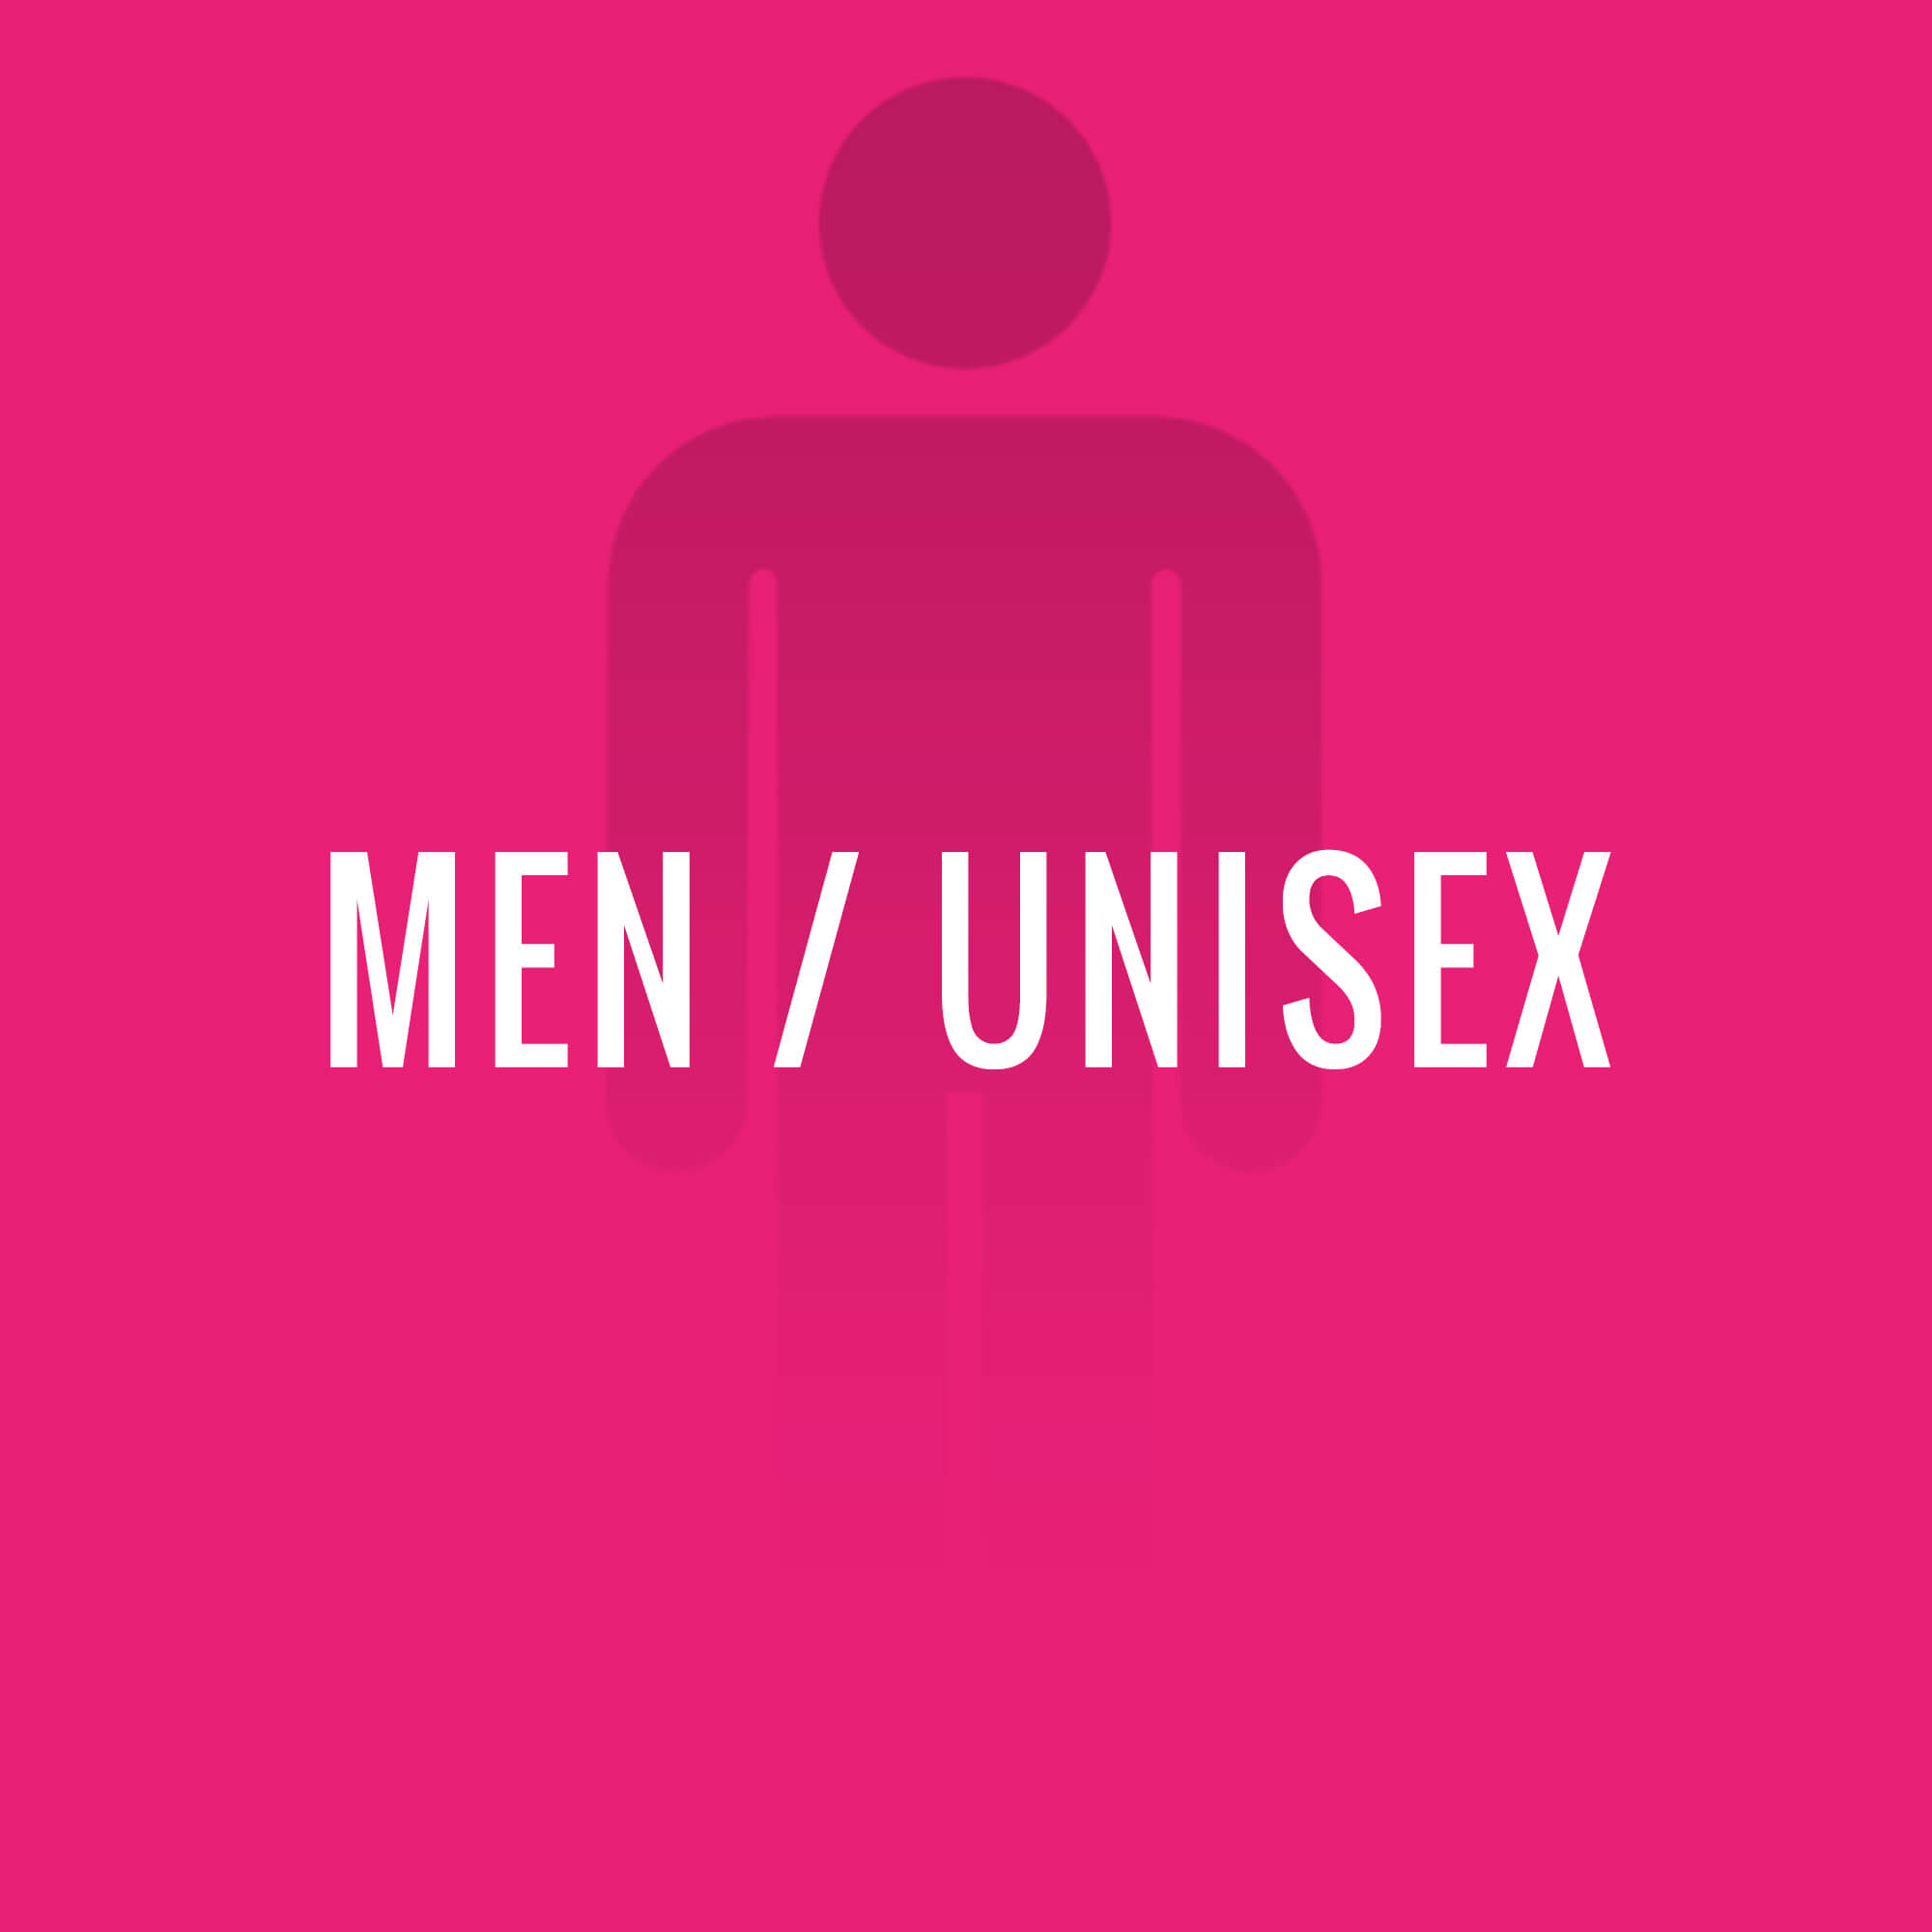 Men / Unisex